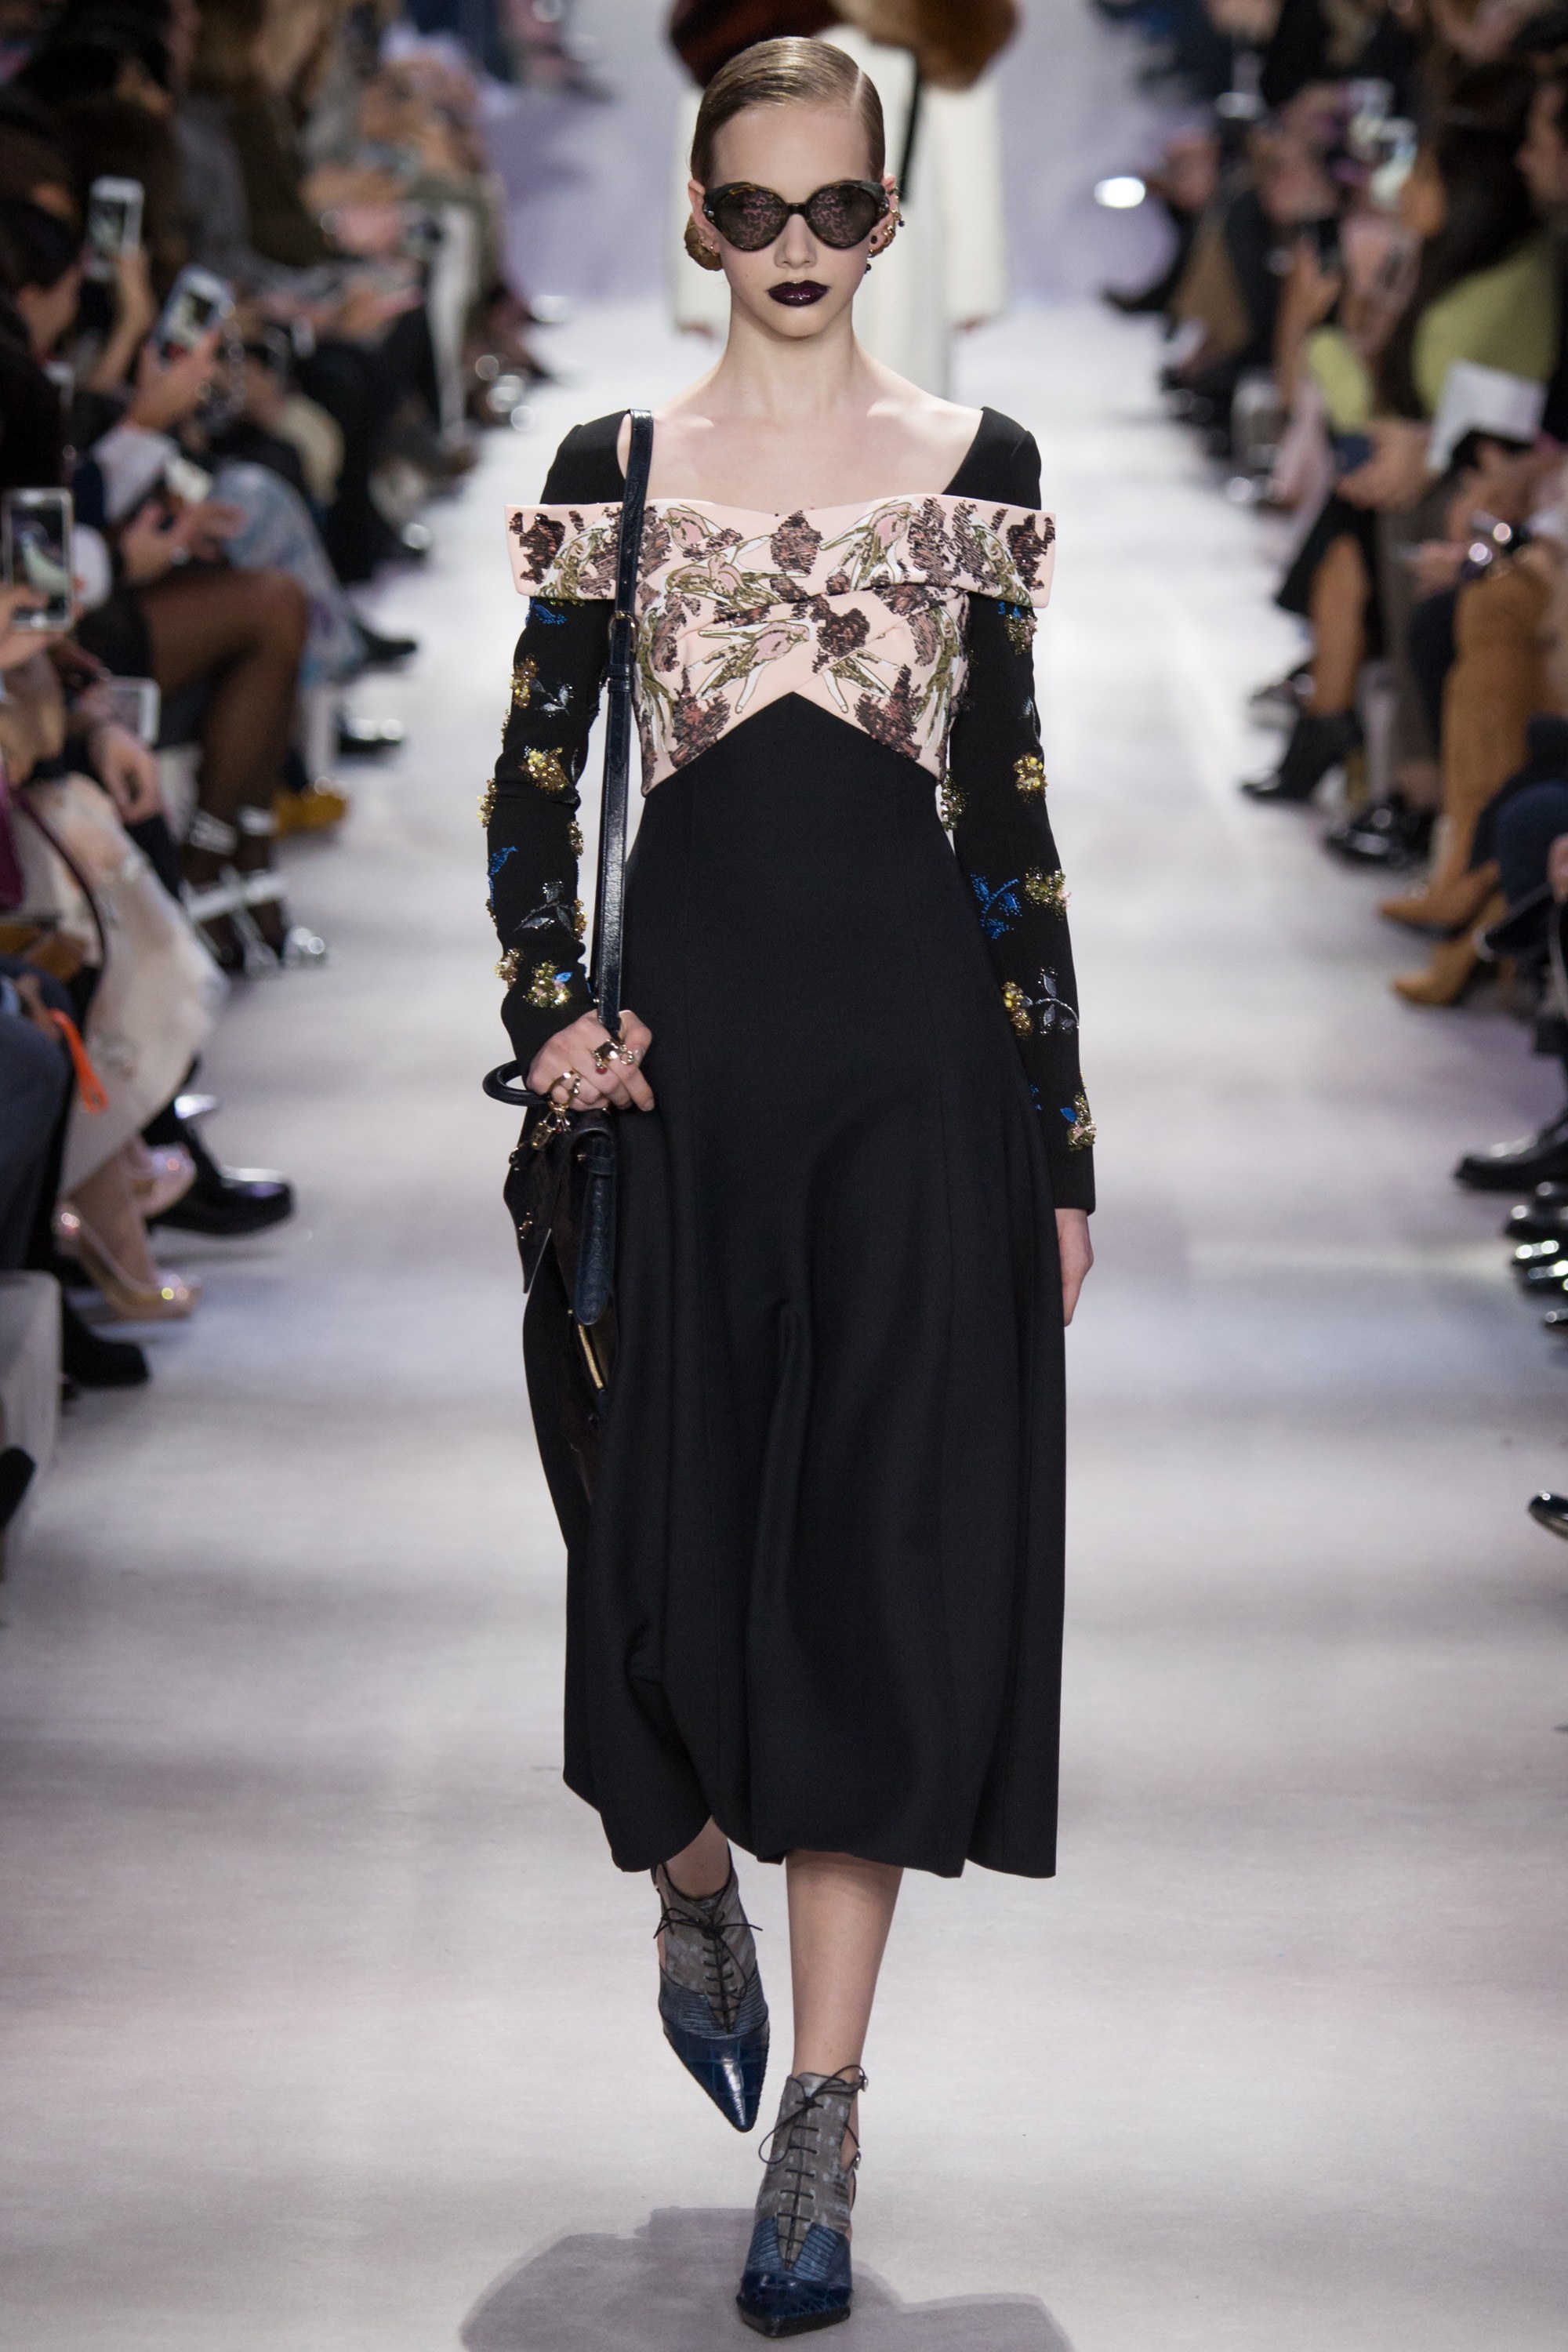 Paris Fashion Week Day 4 Recap: Christian Dior, Loewe, Alexandre ...